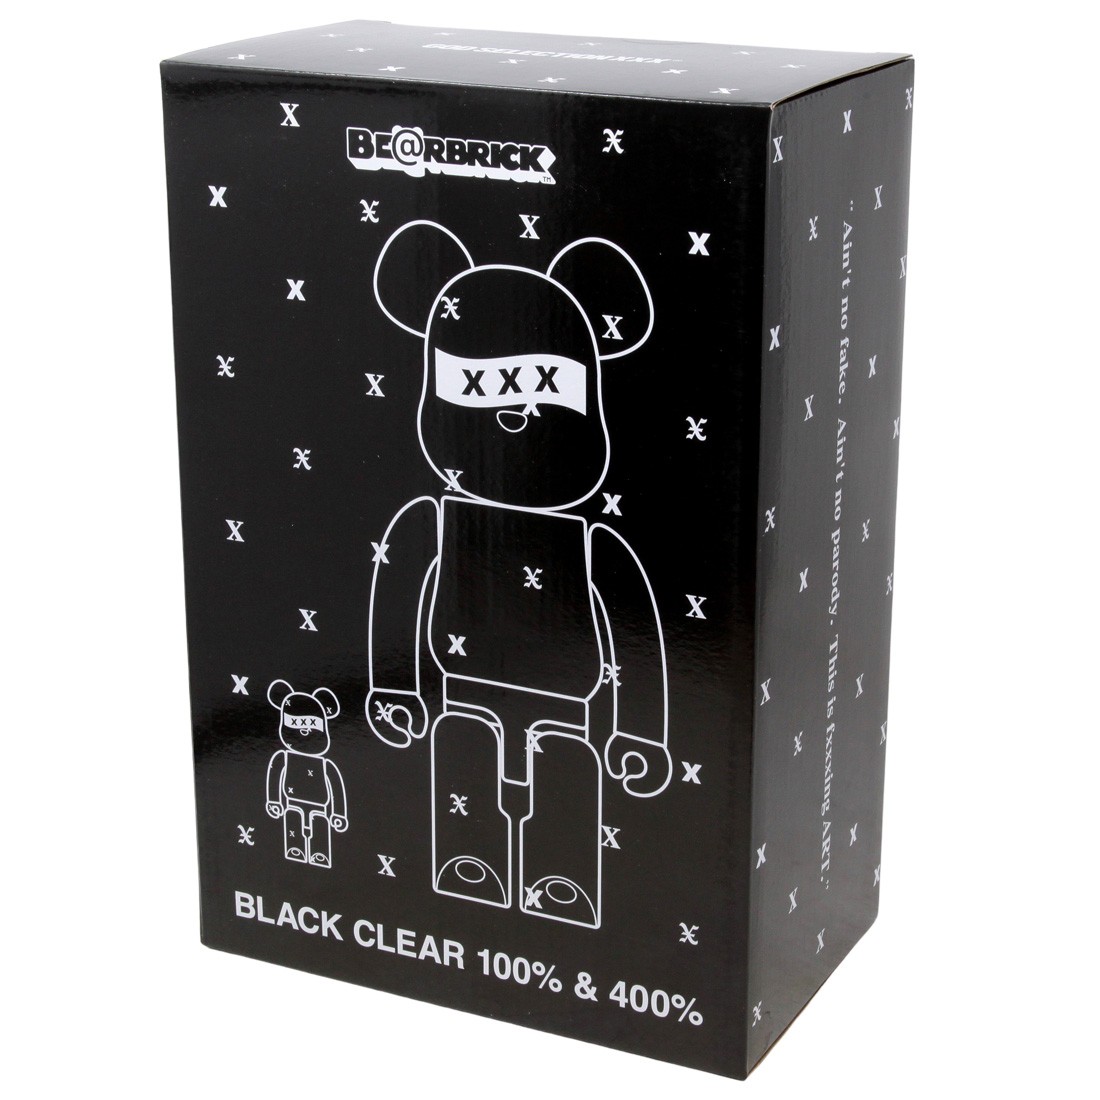 Medicom God Selection XXX Black Clear 100% 400% Bearbrick Figure Set (black)